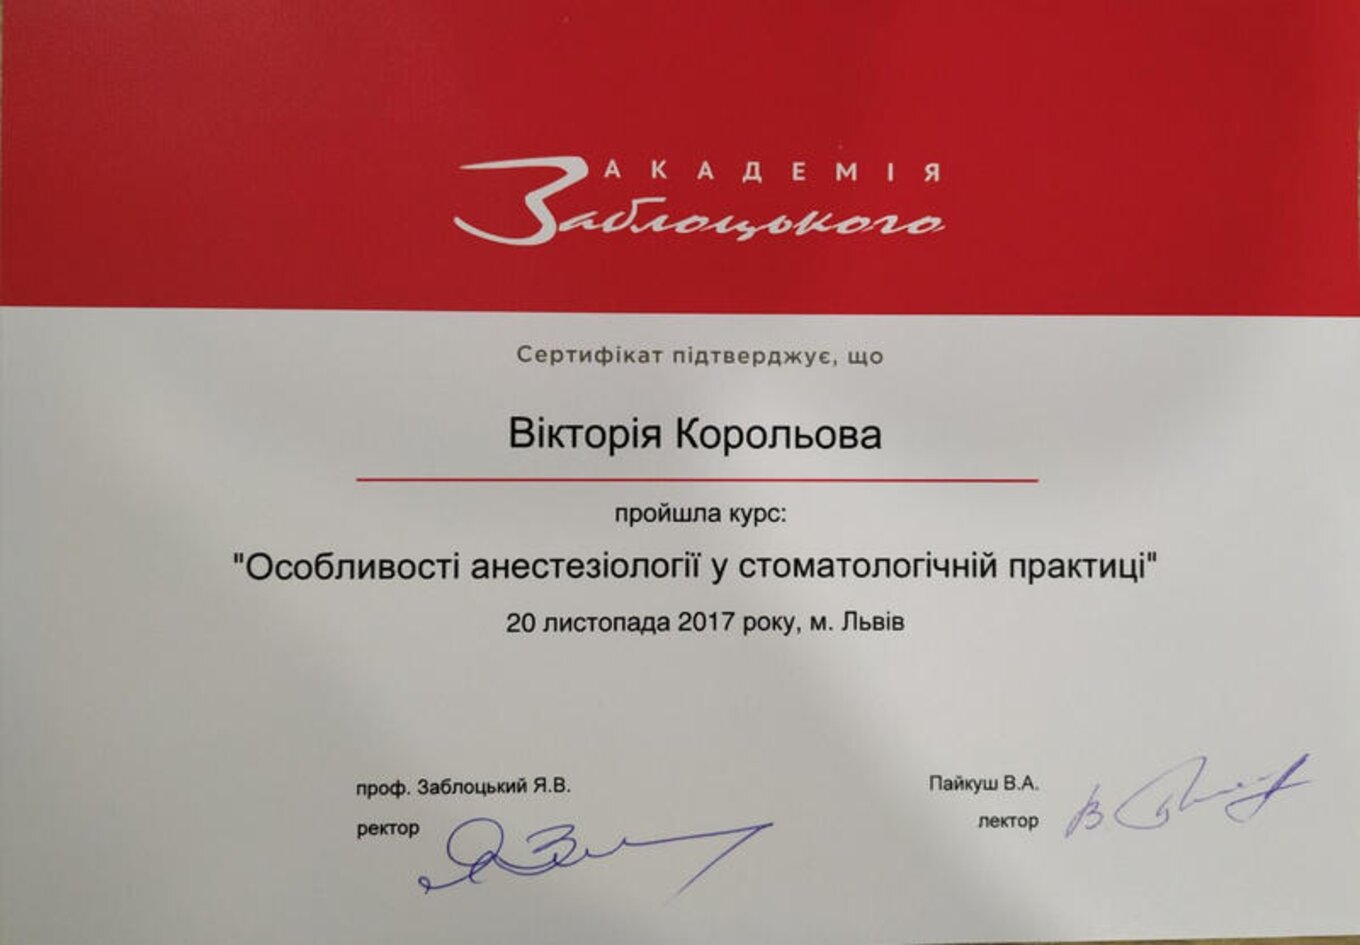 certificates/korolova-viktoriya-emanuyilivna/hemomedika-cert-koroleva-06.jpg